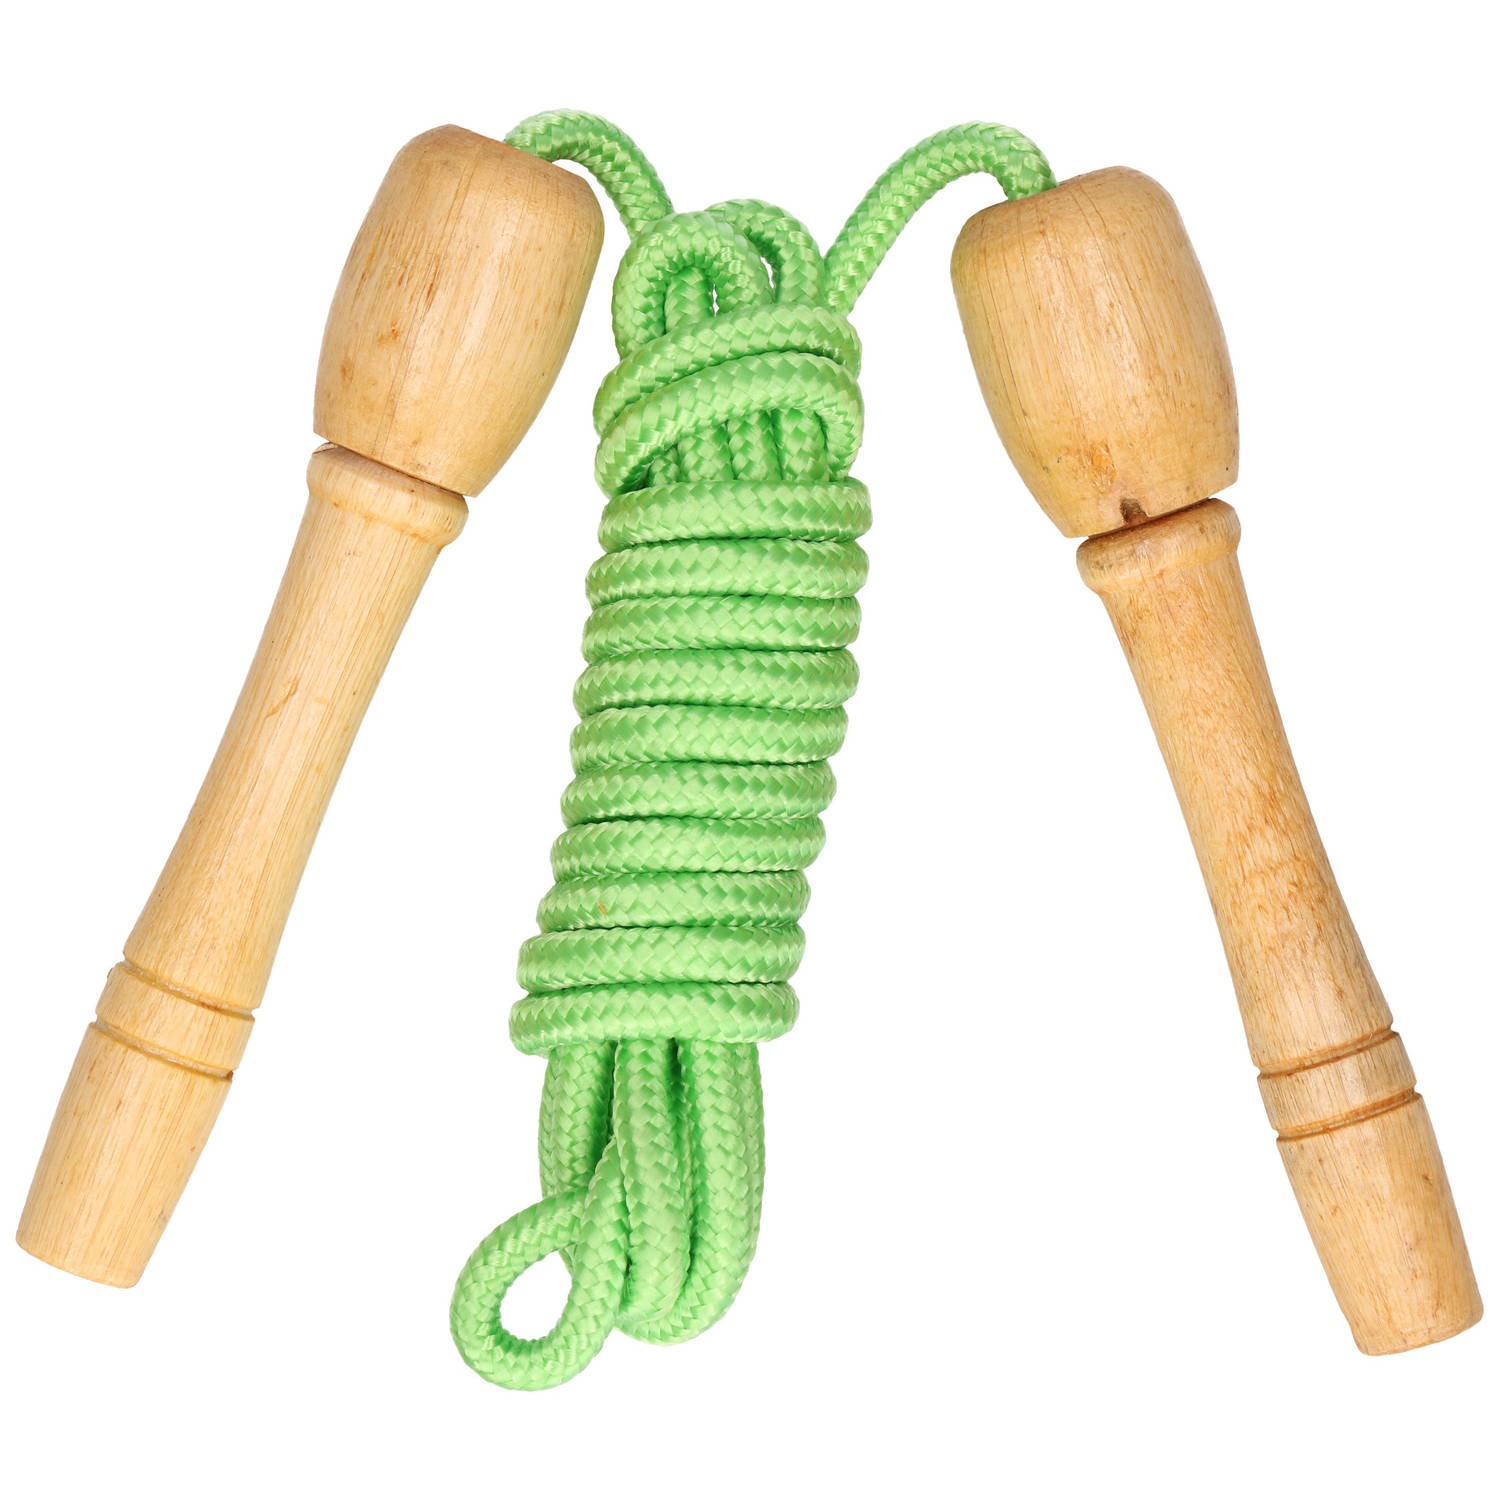 Kids Fun Springtouw speelgoed met houten handvat groen 240 cm buitenspeelgoed Springtouwen